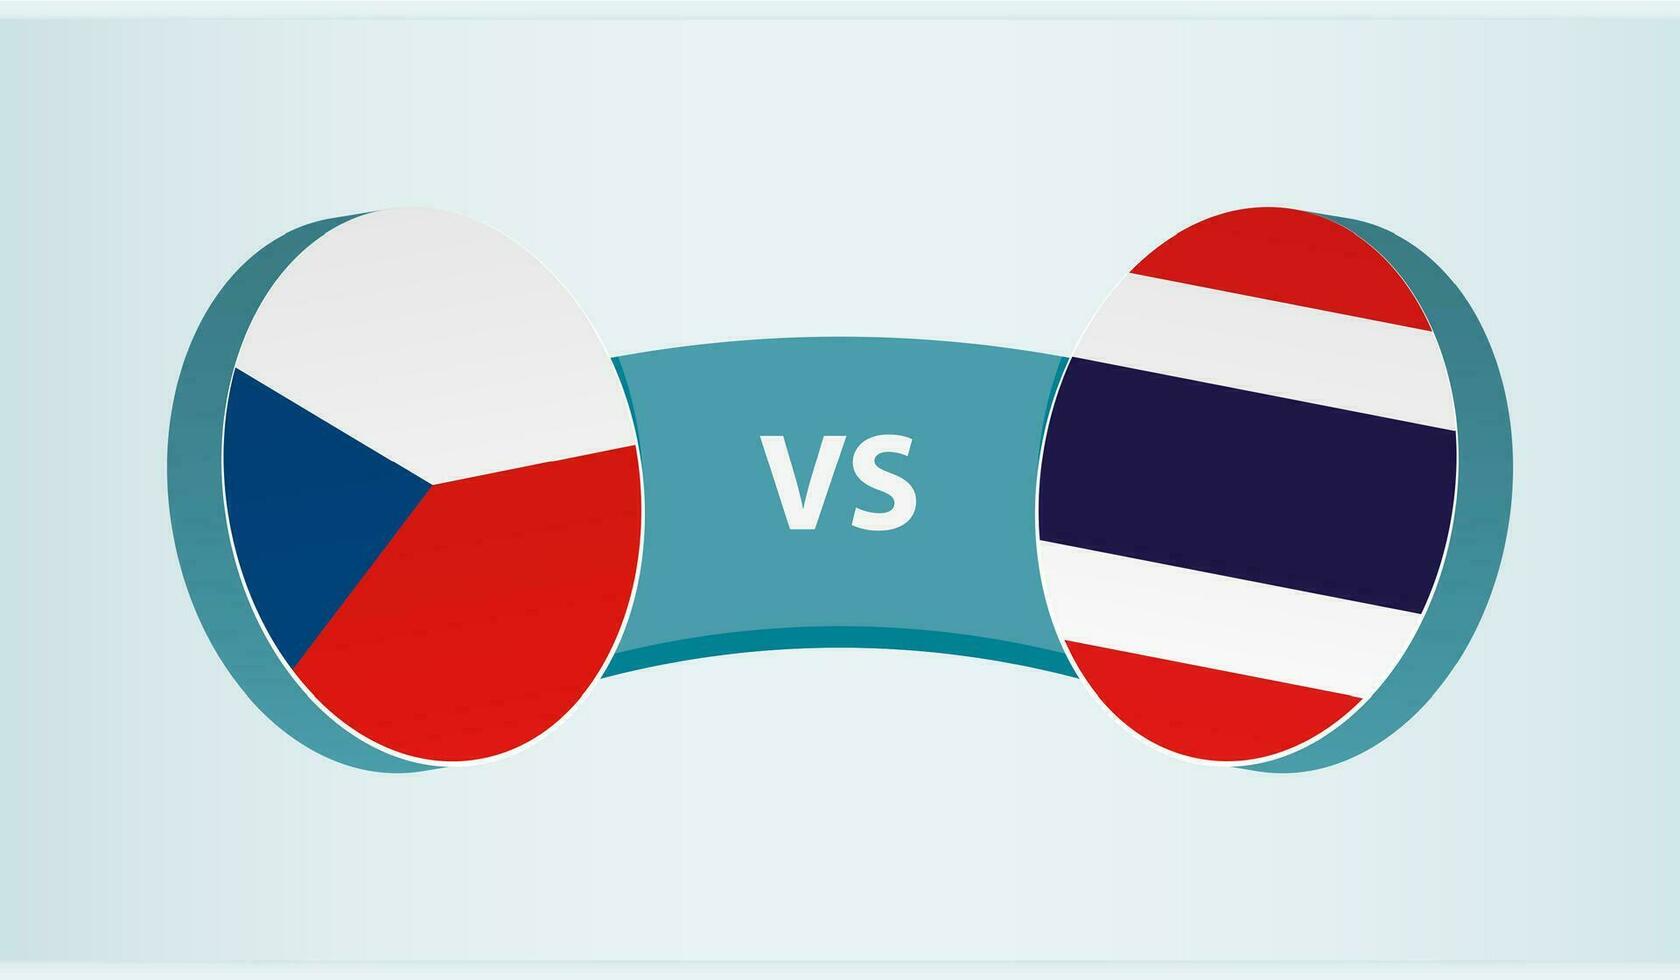 Czech Republic versus Thailand, team sports competition concept. vector